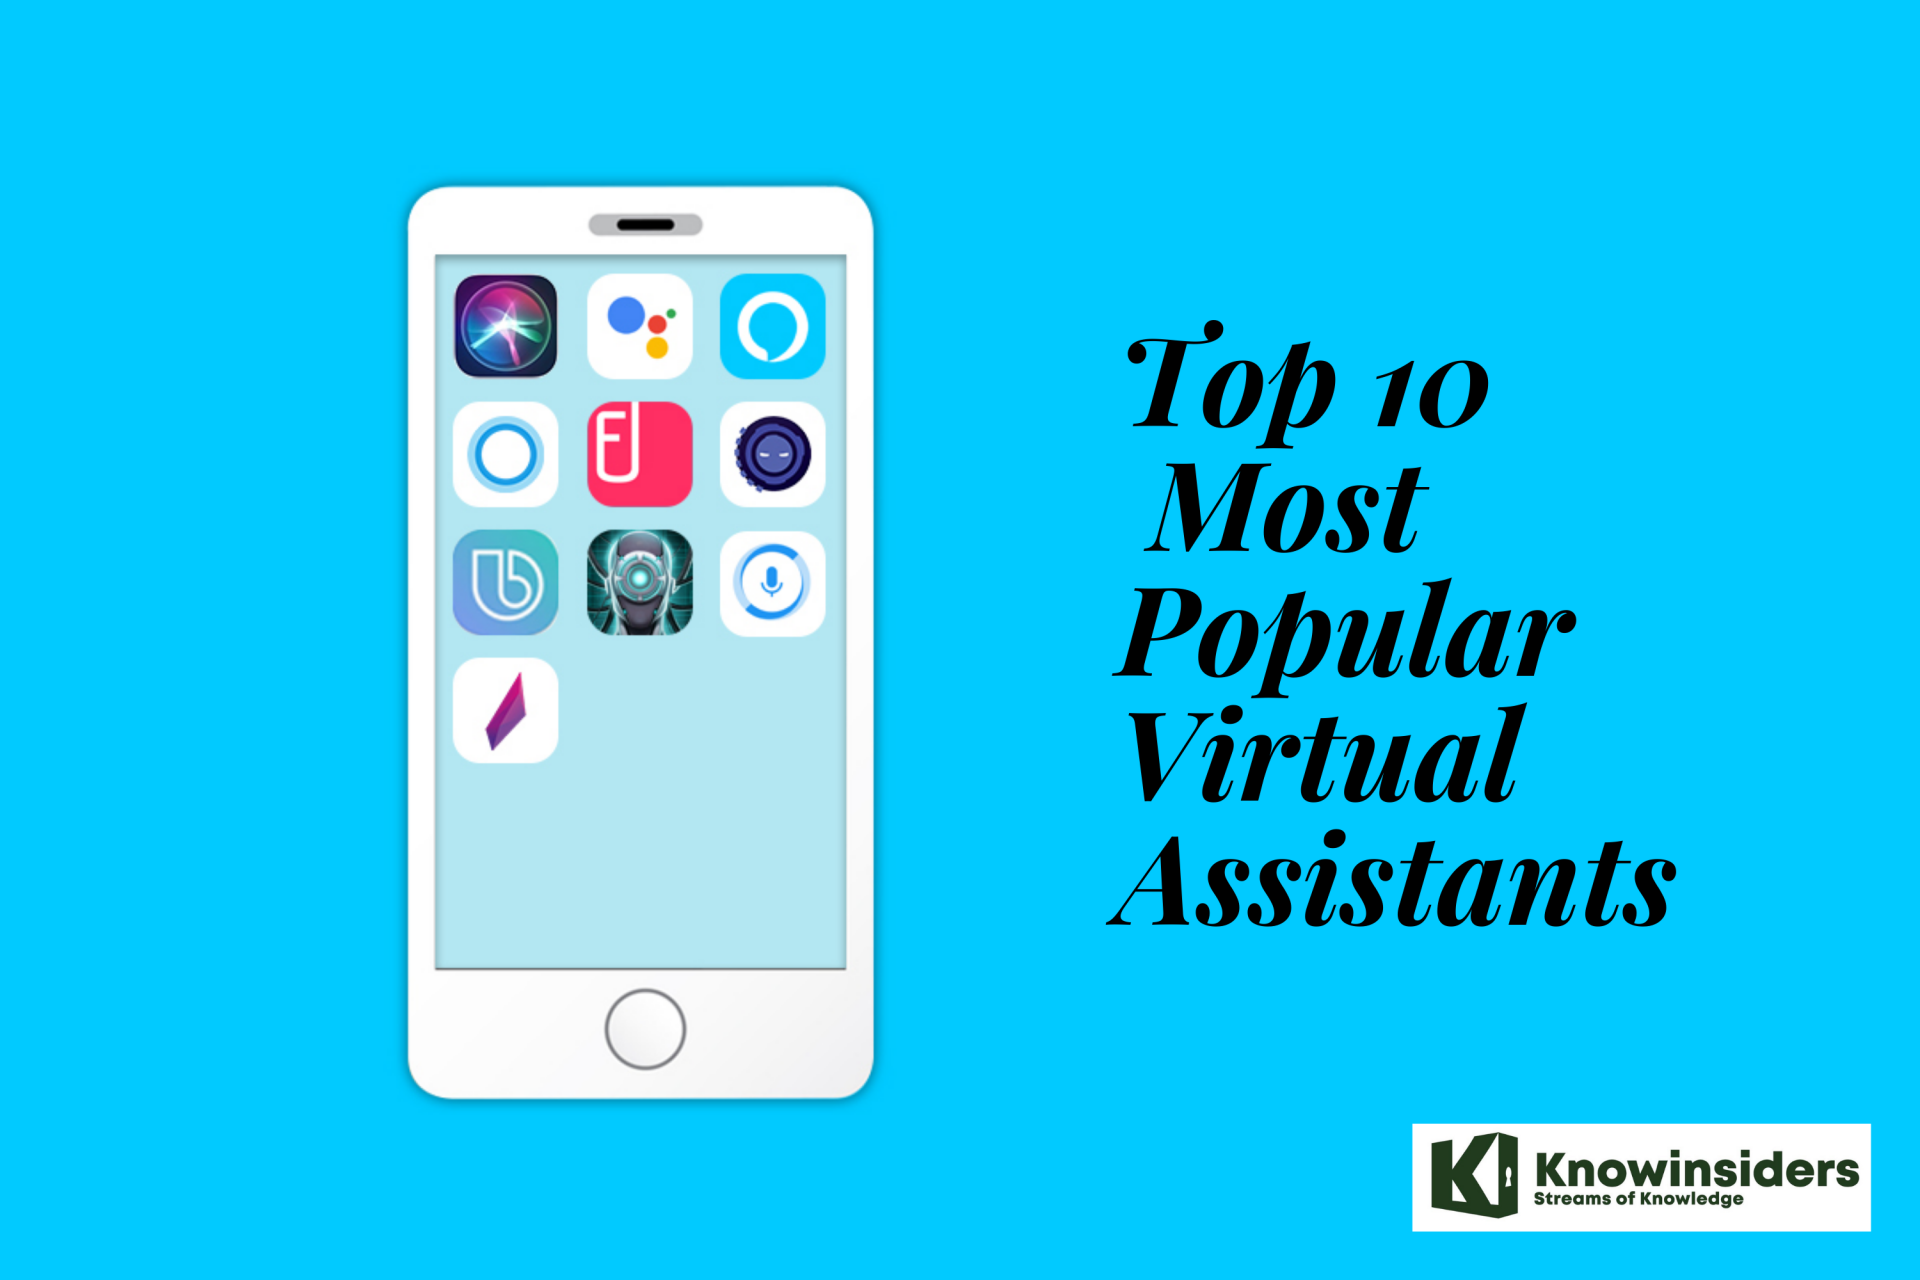 Top 10 Most Popular Virtual Assistants